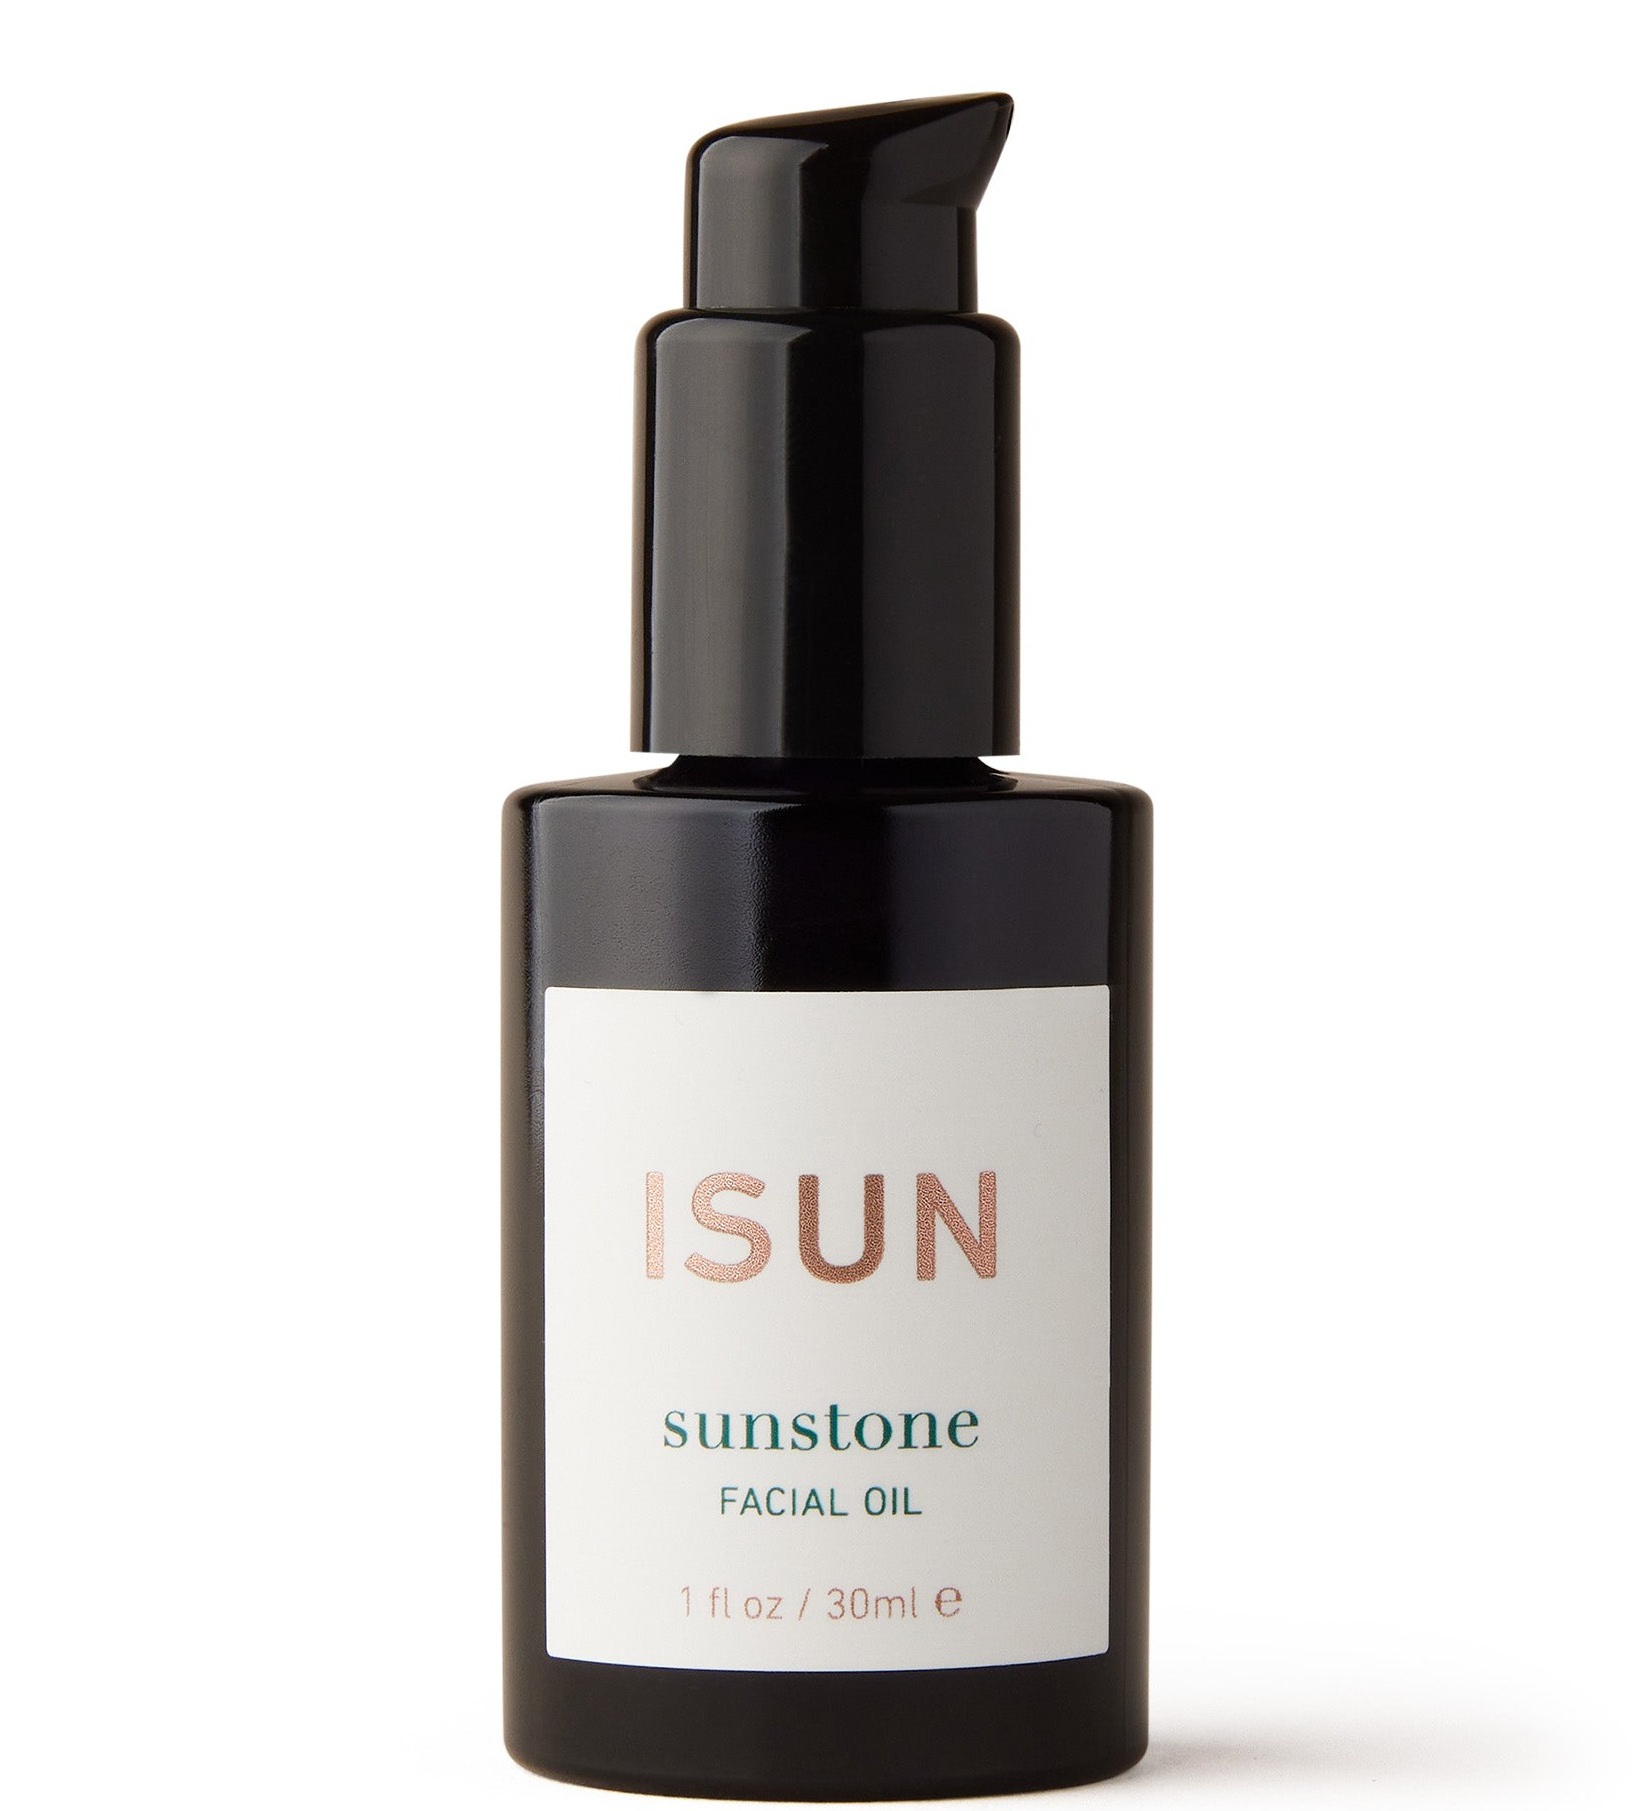 ISUN Sunstone Facial Oil